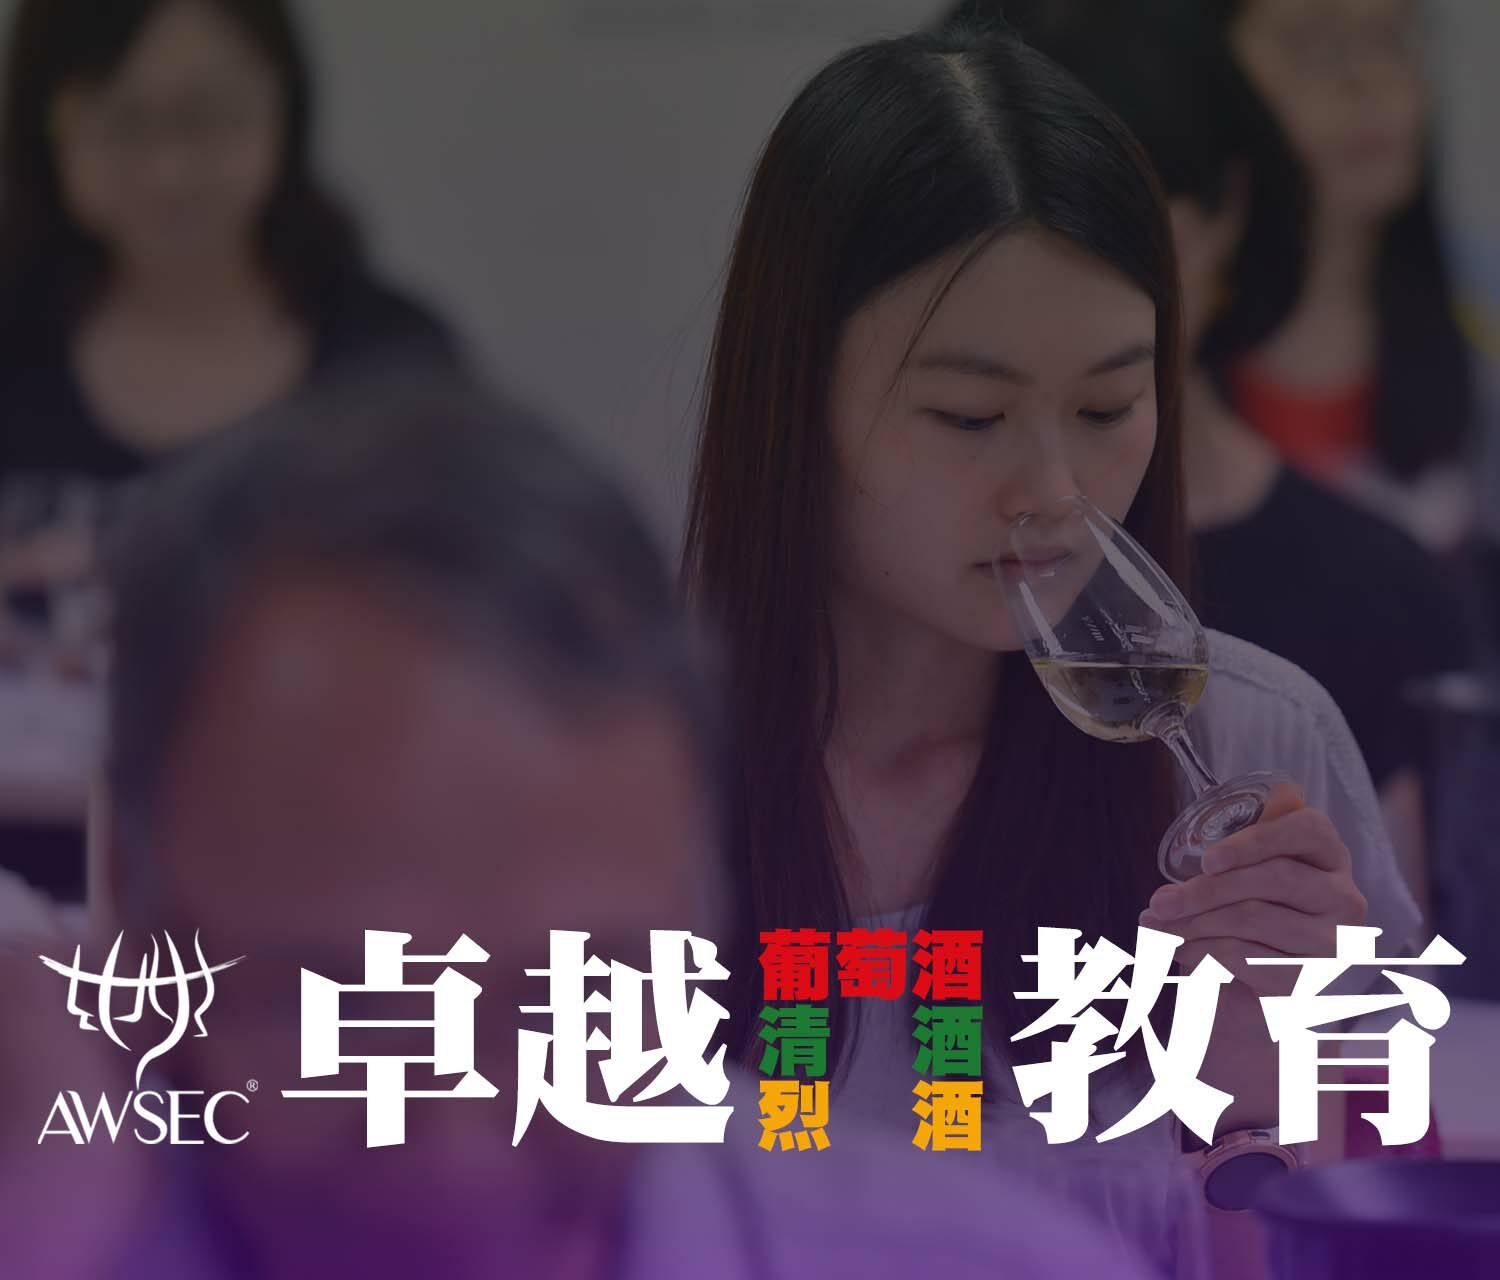 亚洲侍酒及教育中心 - 卓越葡萄酒、清酒及烈酒教育